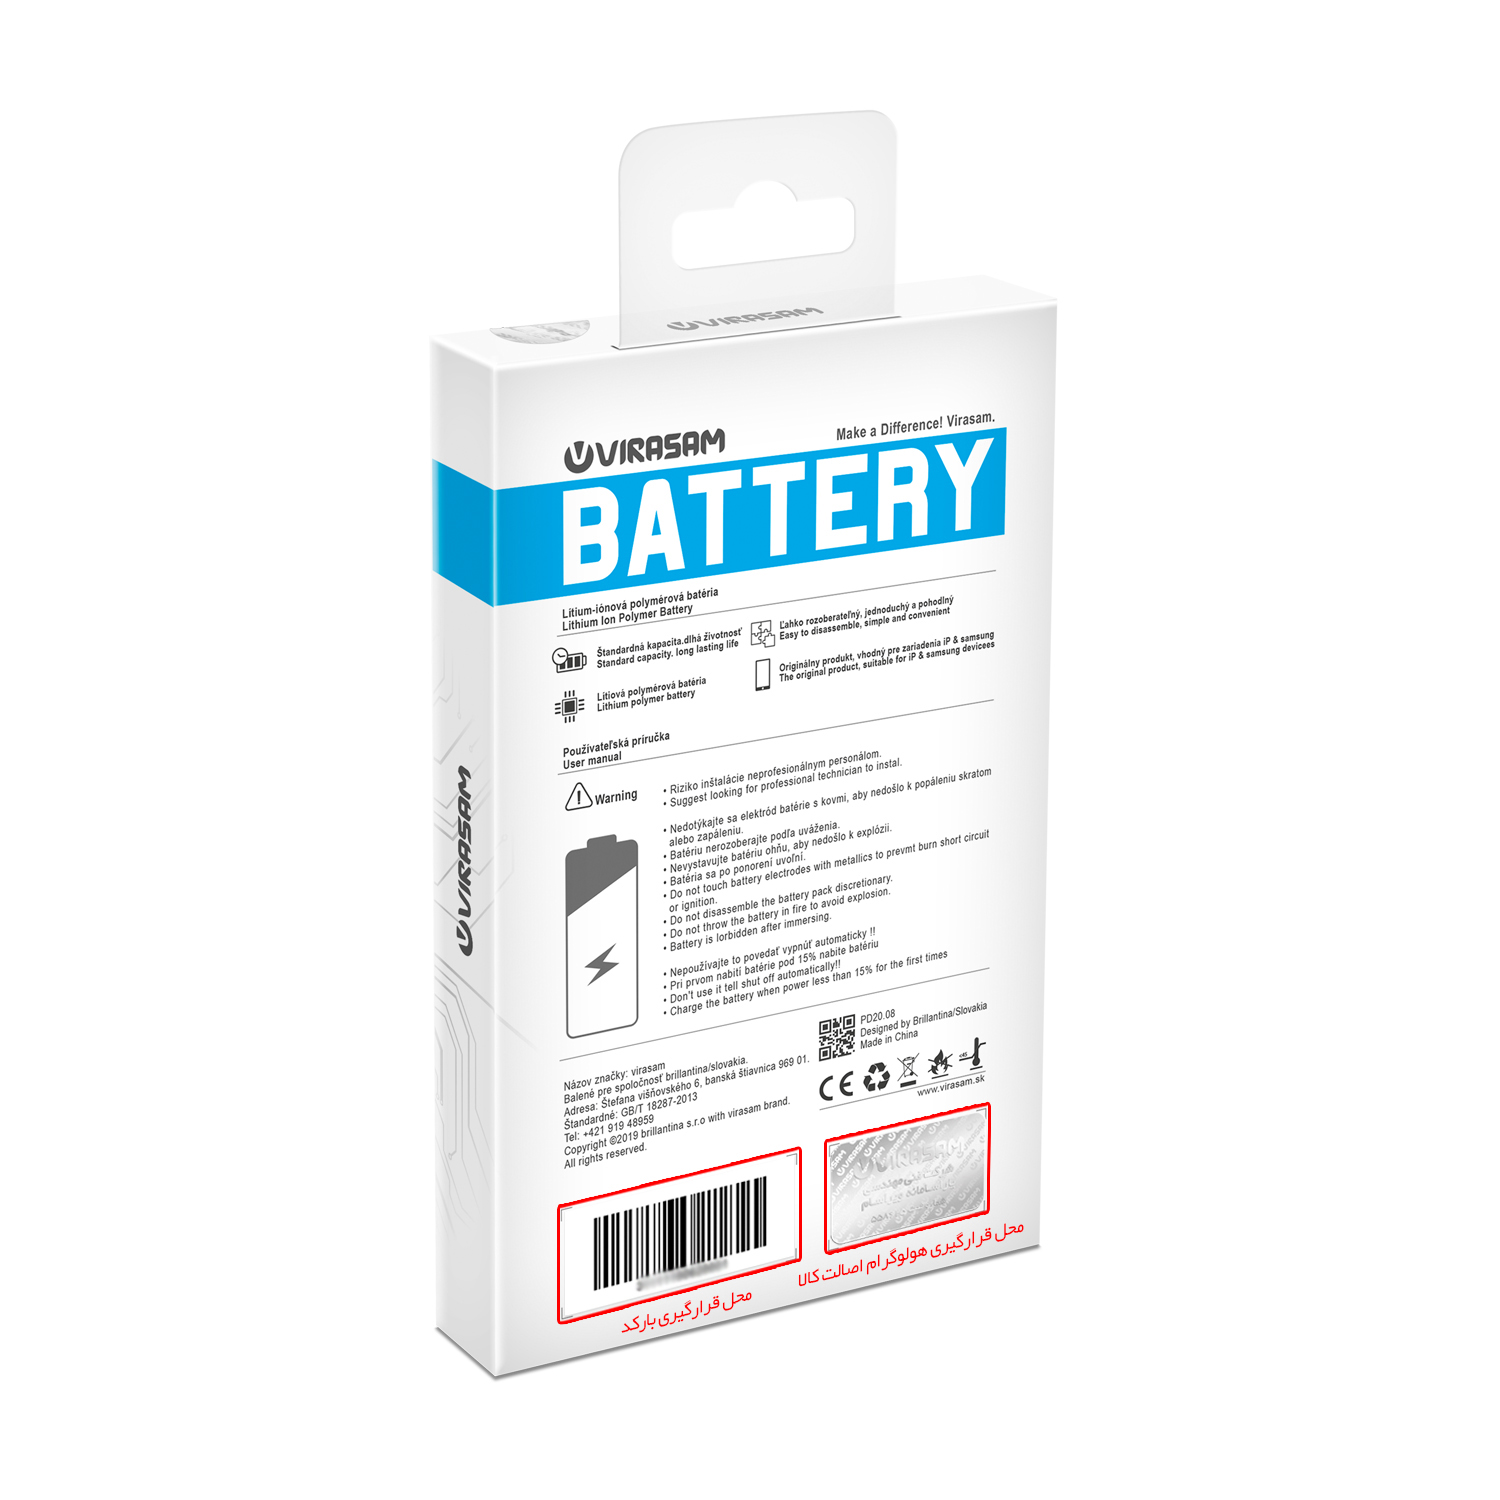 باتری موبایل ویراسام مدل iP6s Plus با ظرفیت ۲۷۵۰ میلی آمپر ساعت مناسب برای گوشی موبایل اپل مدل iPhone 6s Plus